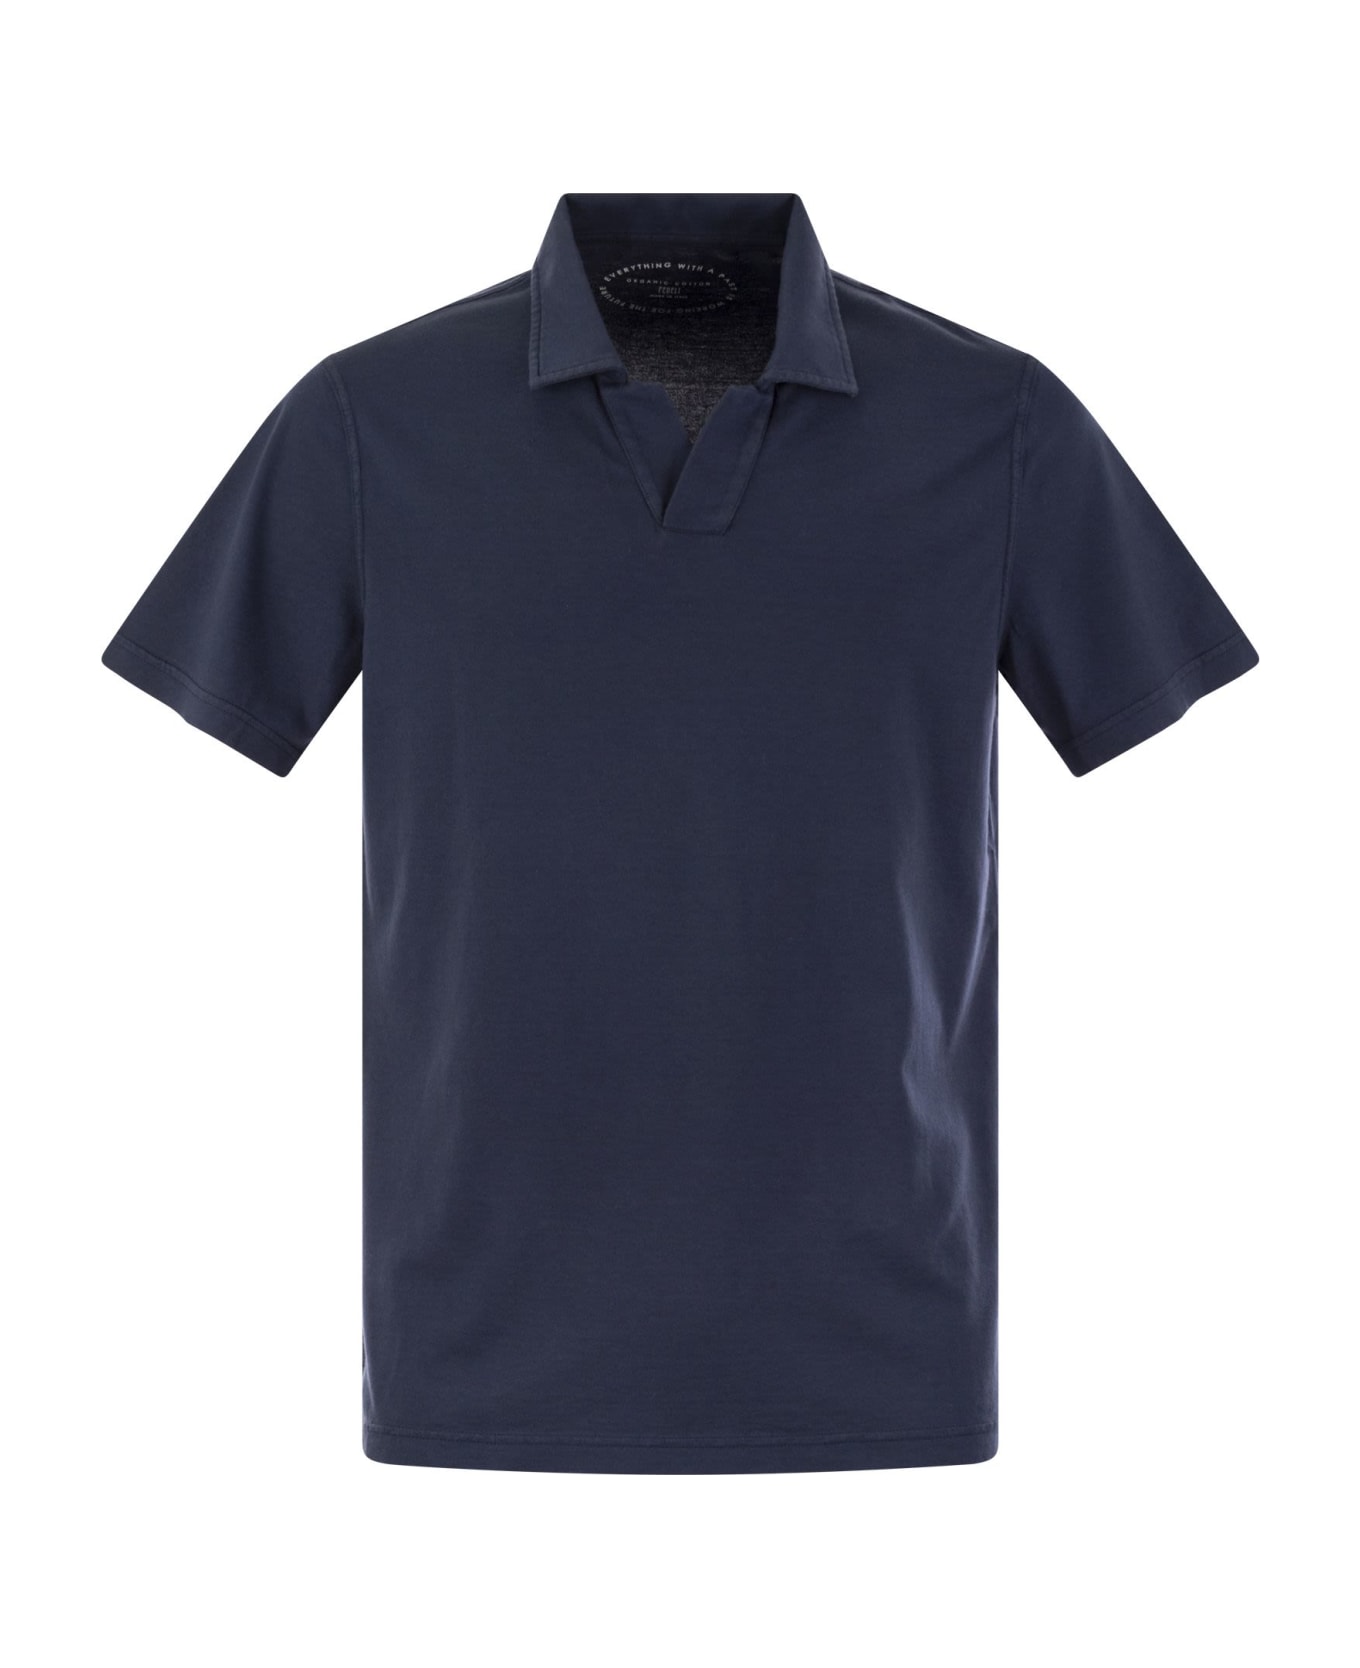 Fedeli Cotton Polo Shirt With Open Collar - Blue